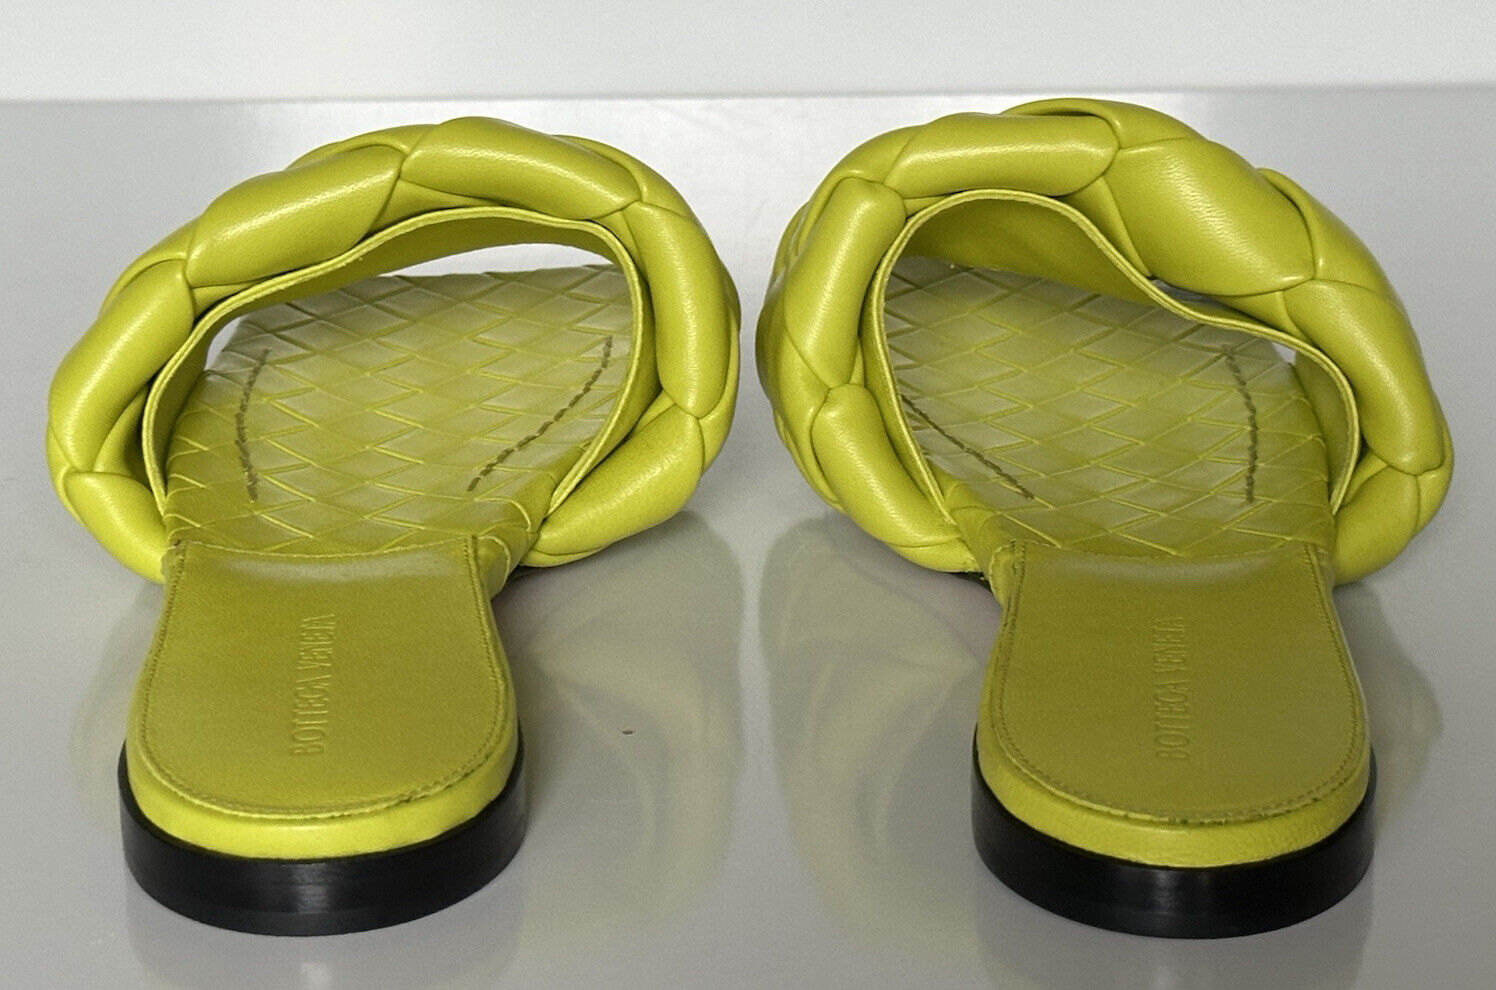 NWT 1350 долларов США Bottega Veneta Желтые лимонные сандалии на плоской подошве 7 США (37 евро) 608853 